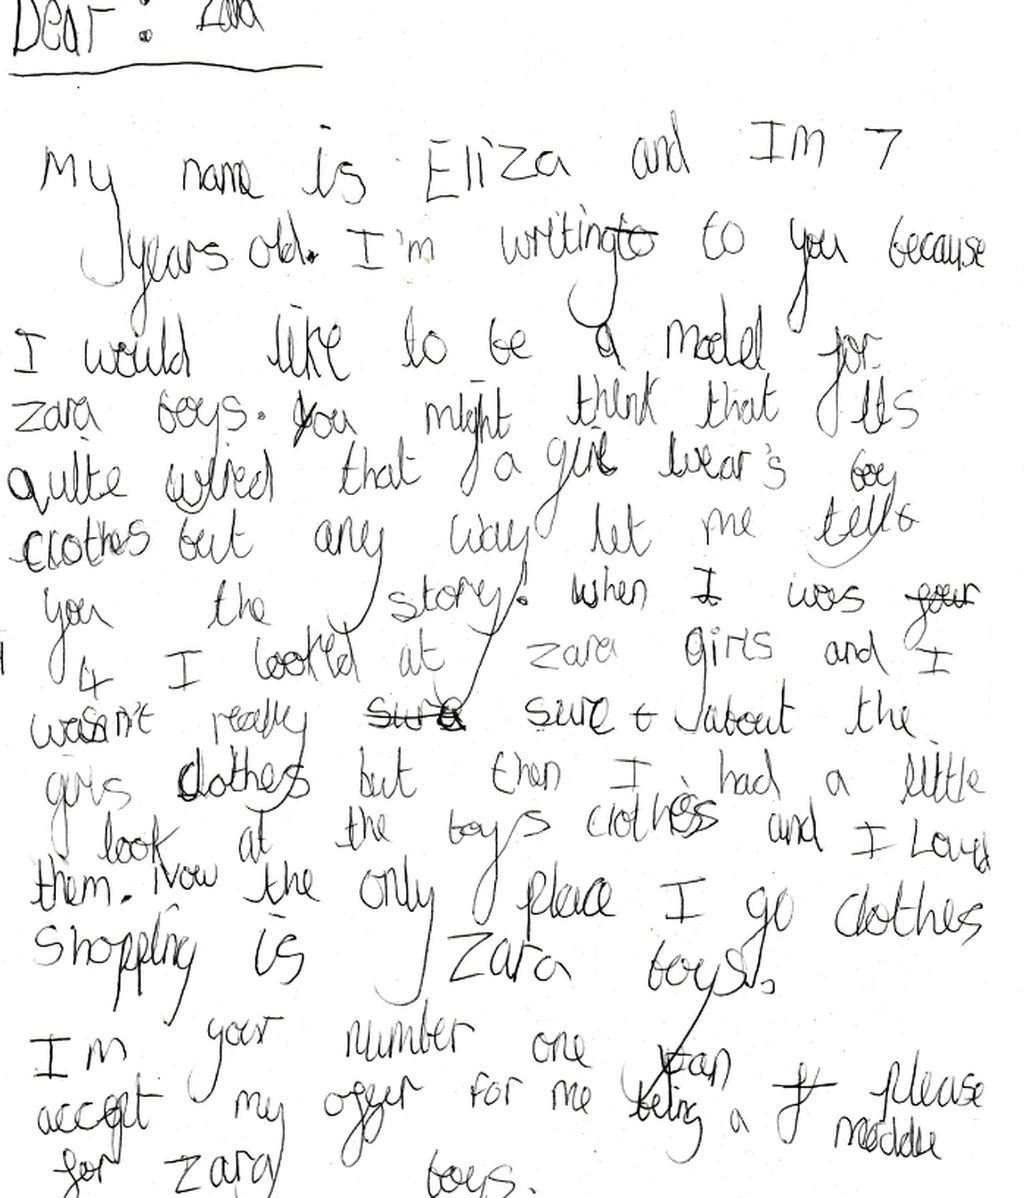 Una niña de 7 años pide a Zara poder ser su modelo masculina y le responden